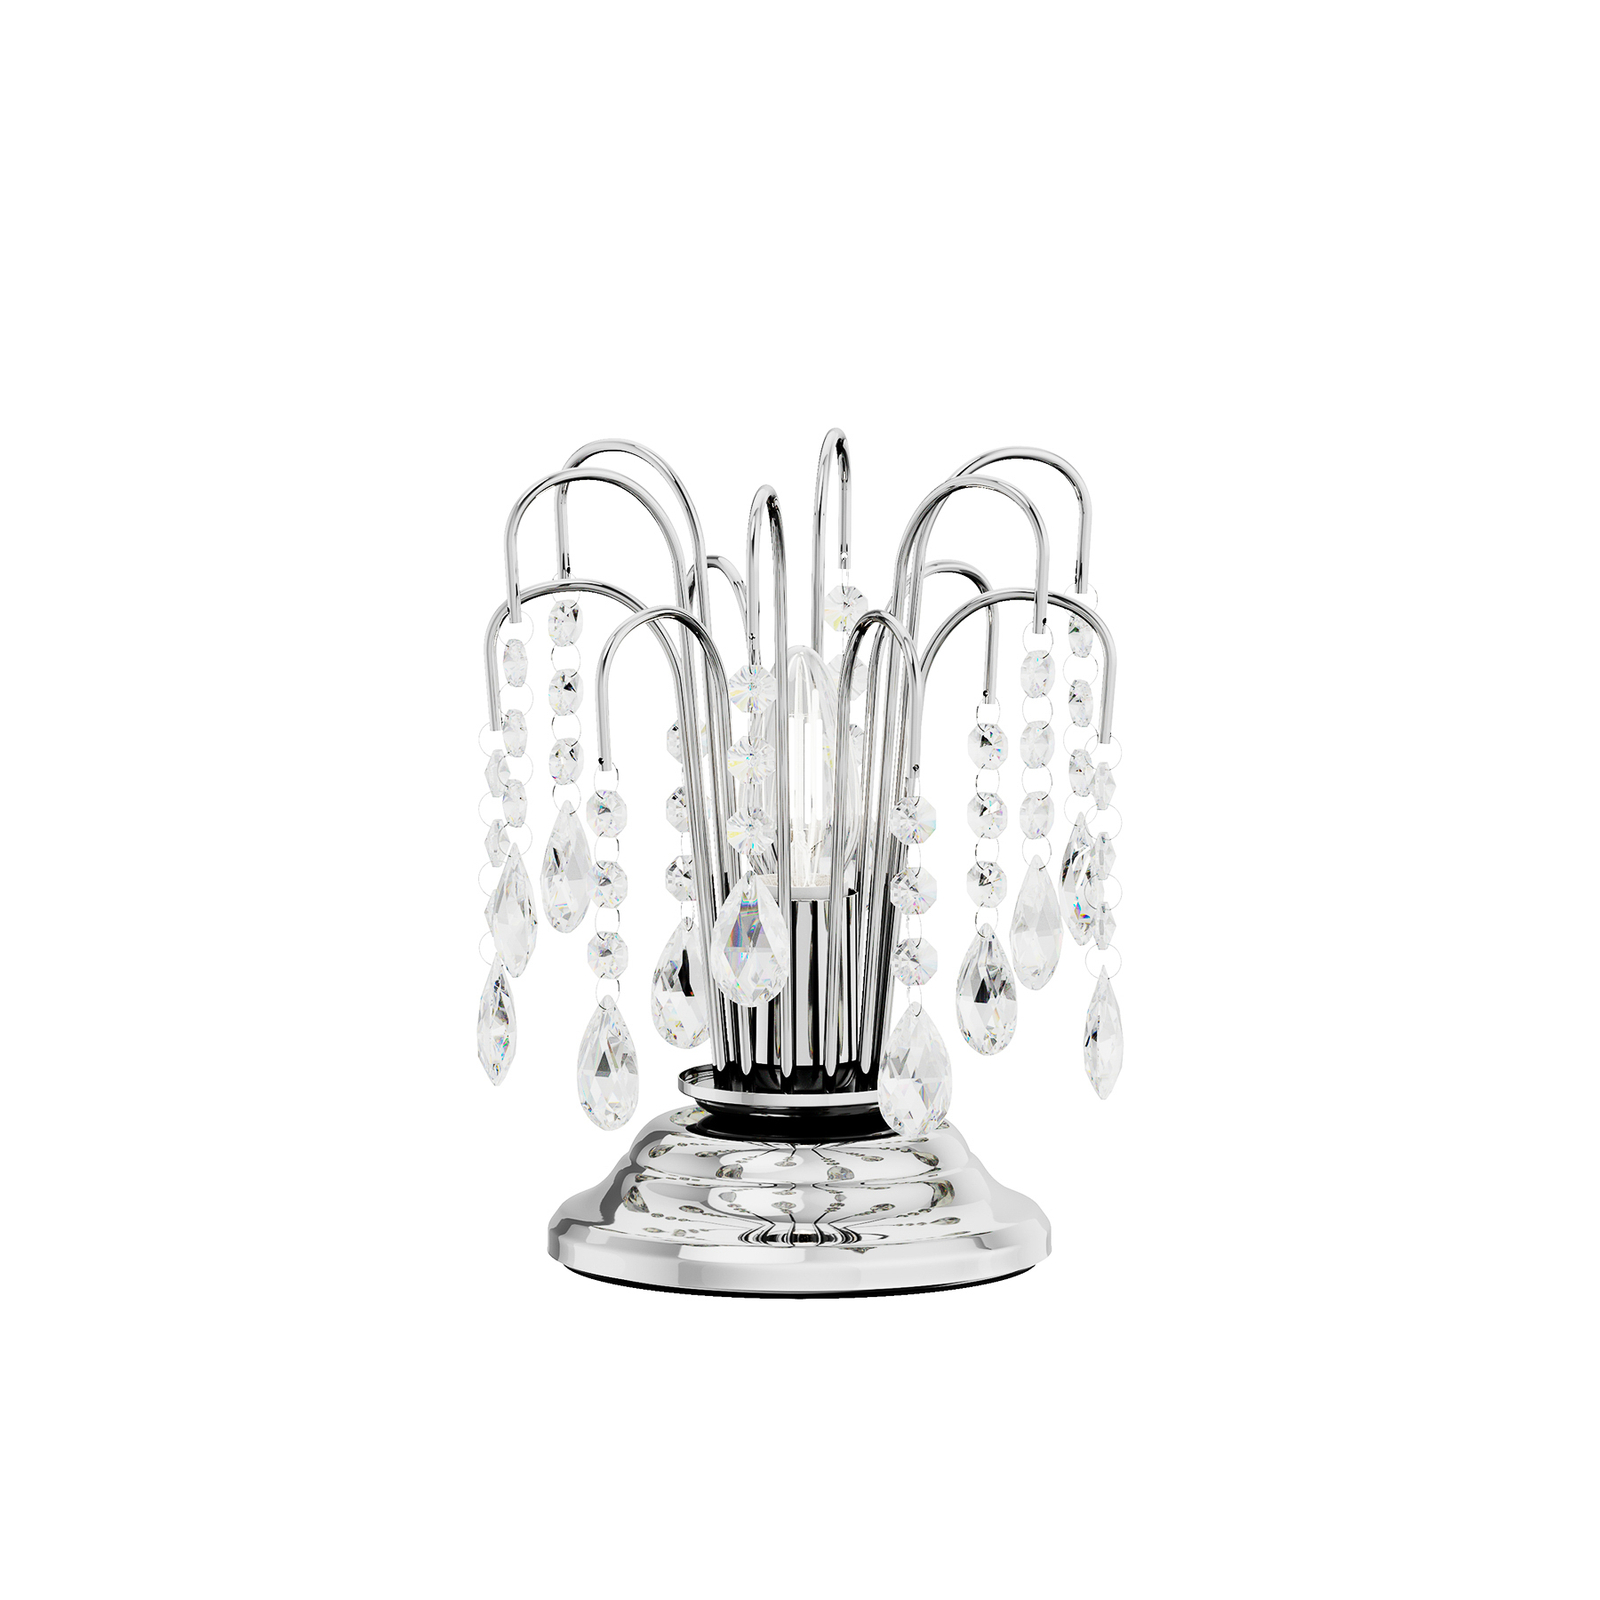 Pöytälamppu Pioggia kristallisateella, 26cm, kromi